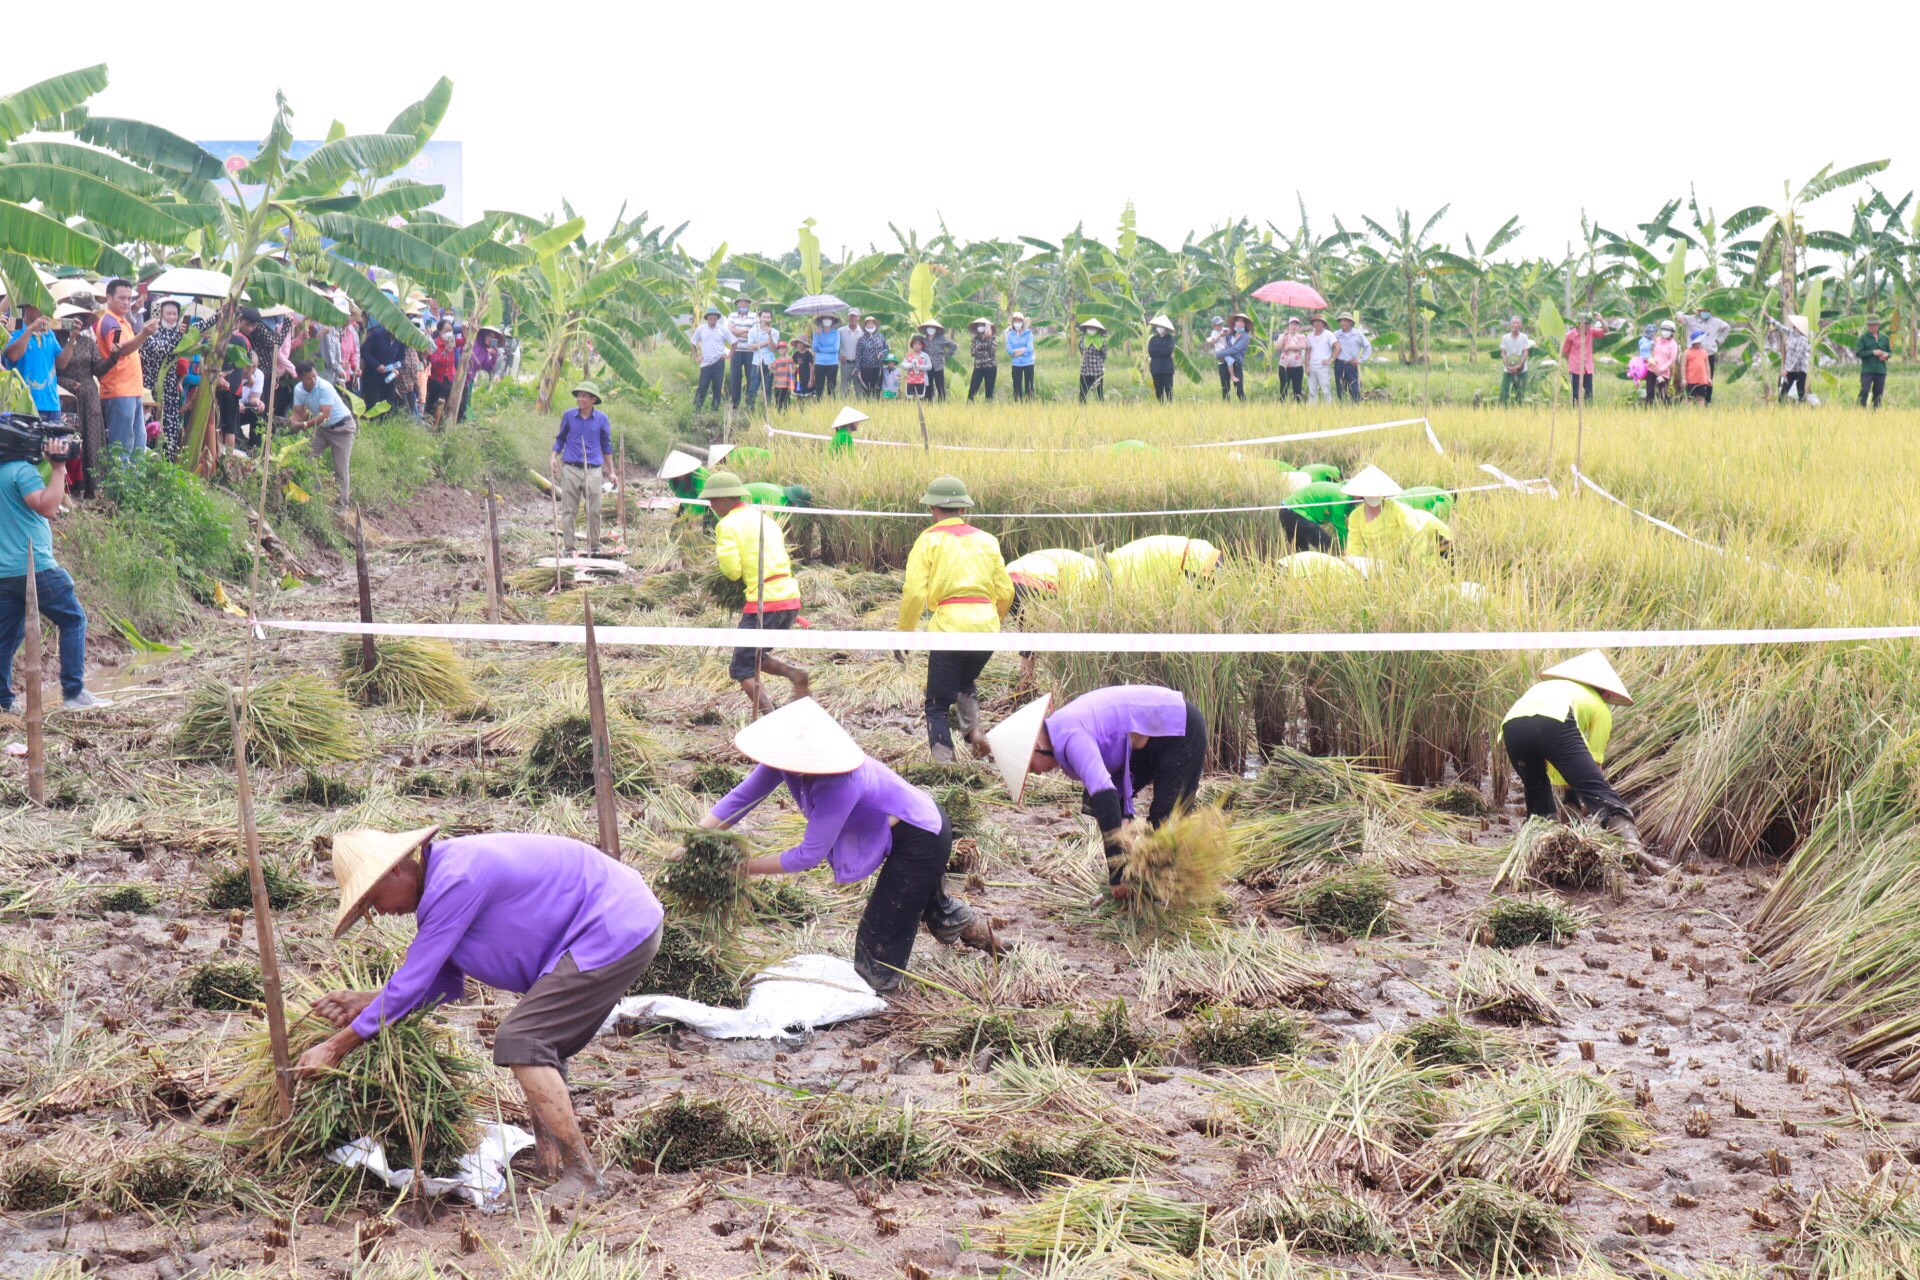  Hội thi gặt lúa rươi hữu cơ tại xã An Thanh, huyện Tứ Kỳ.